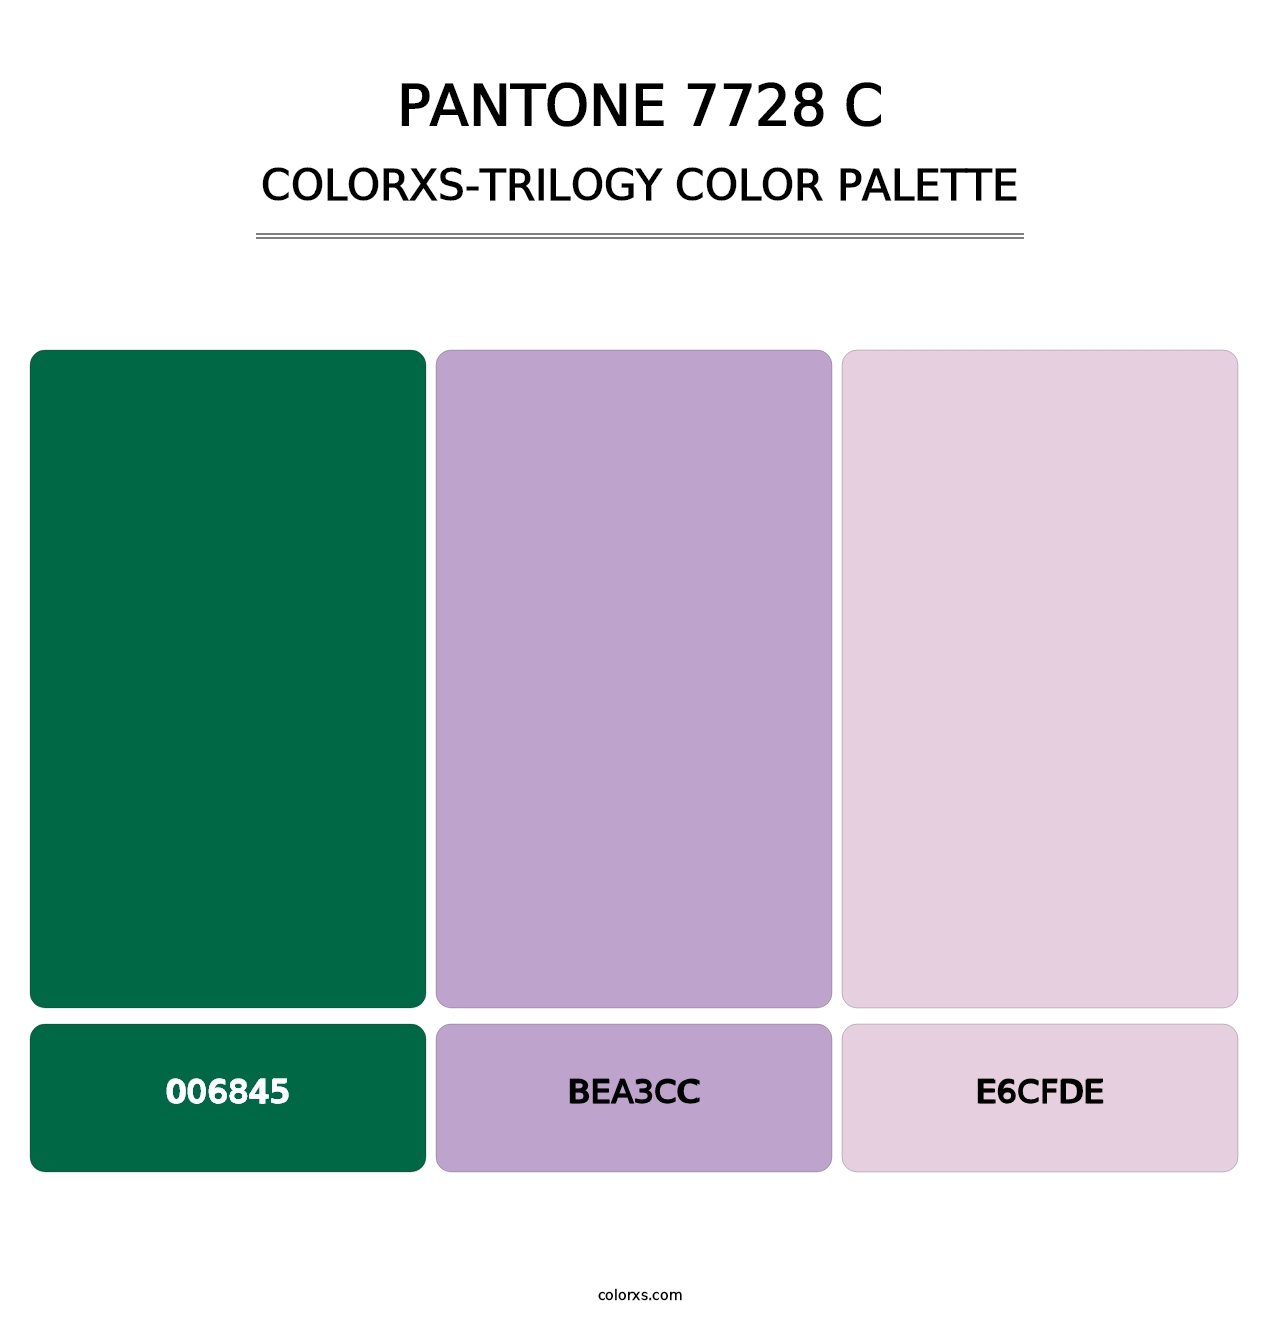 PANTONE 7728 C - Colorxs Trilogy Palette